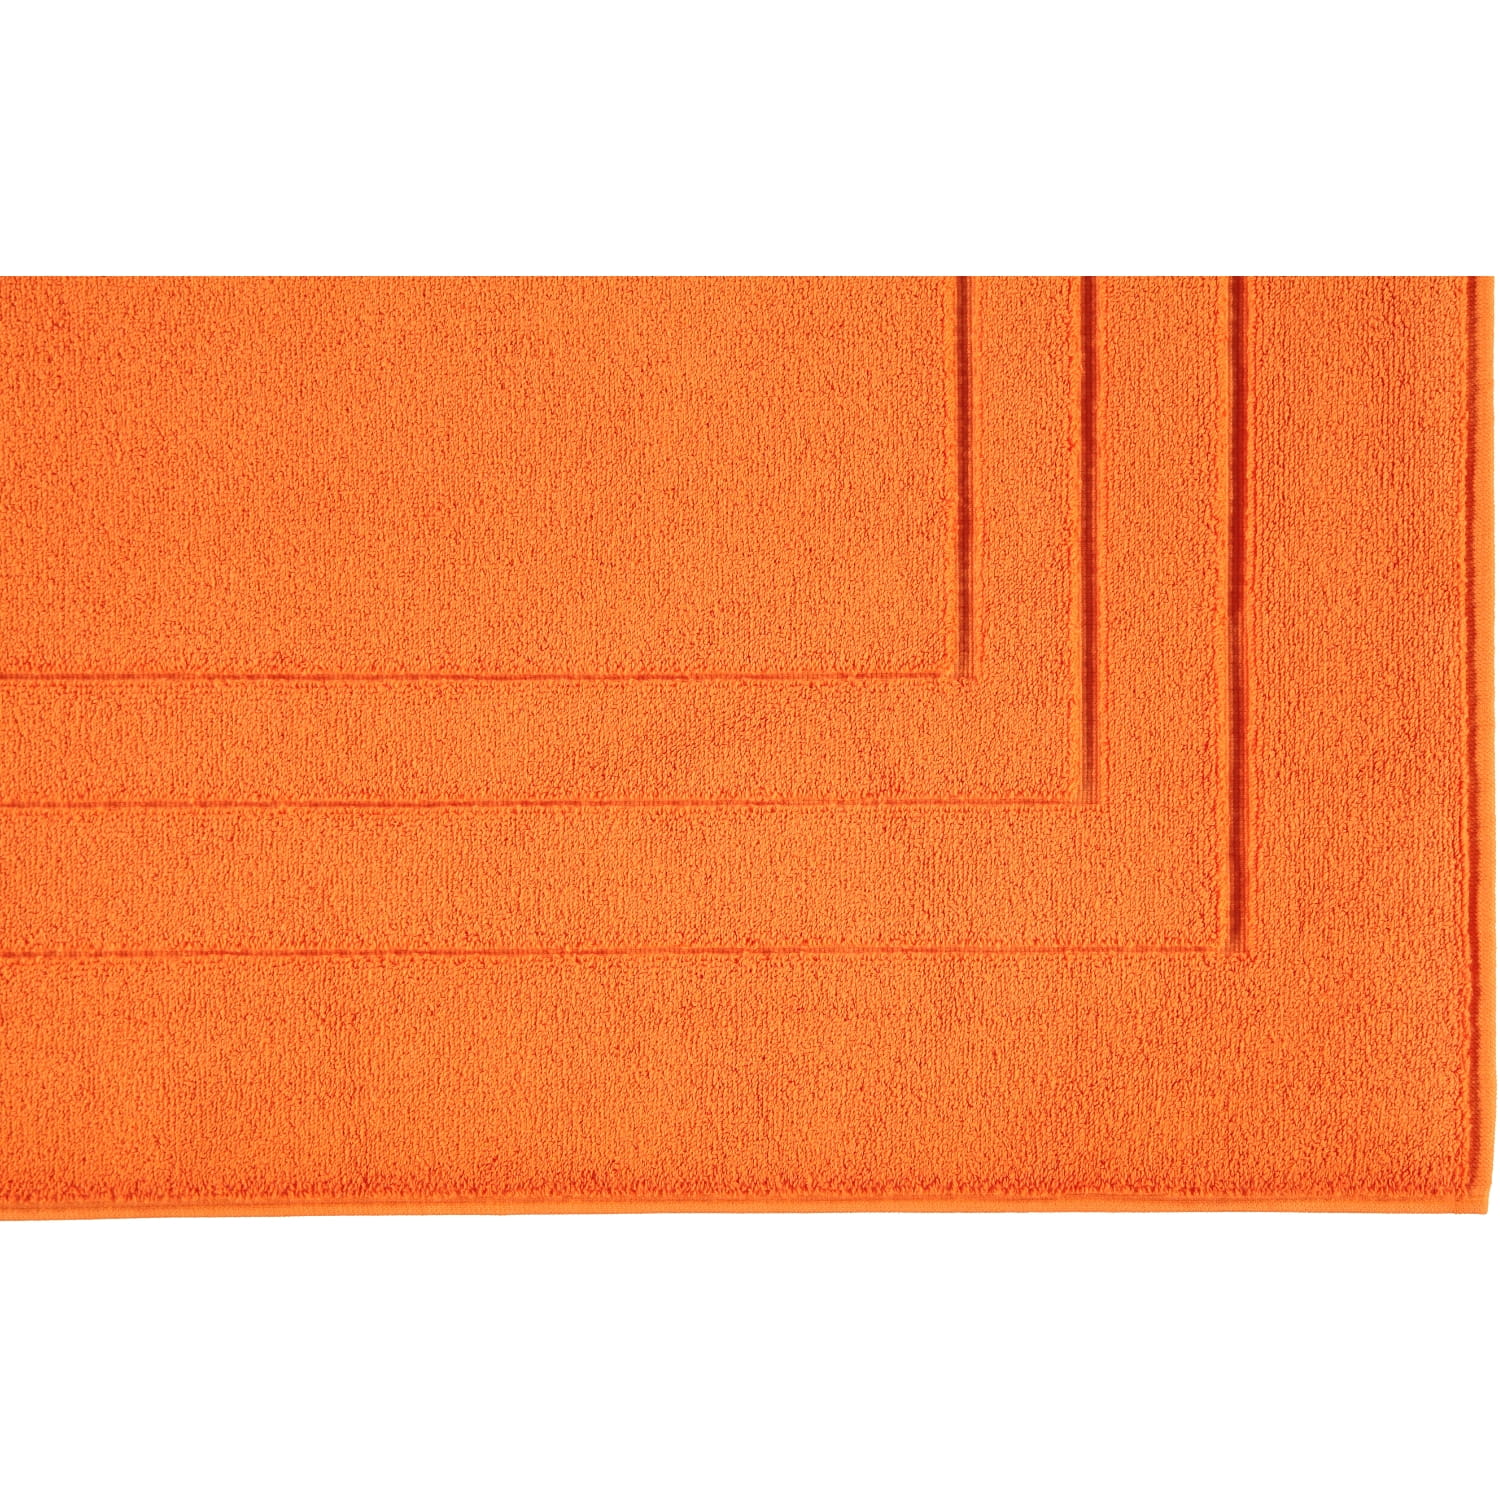 Badematte Vossen | | orange Feeling | Marken Farbe: Vossen 255 - Calypso Badematte Vossen -